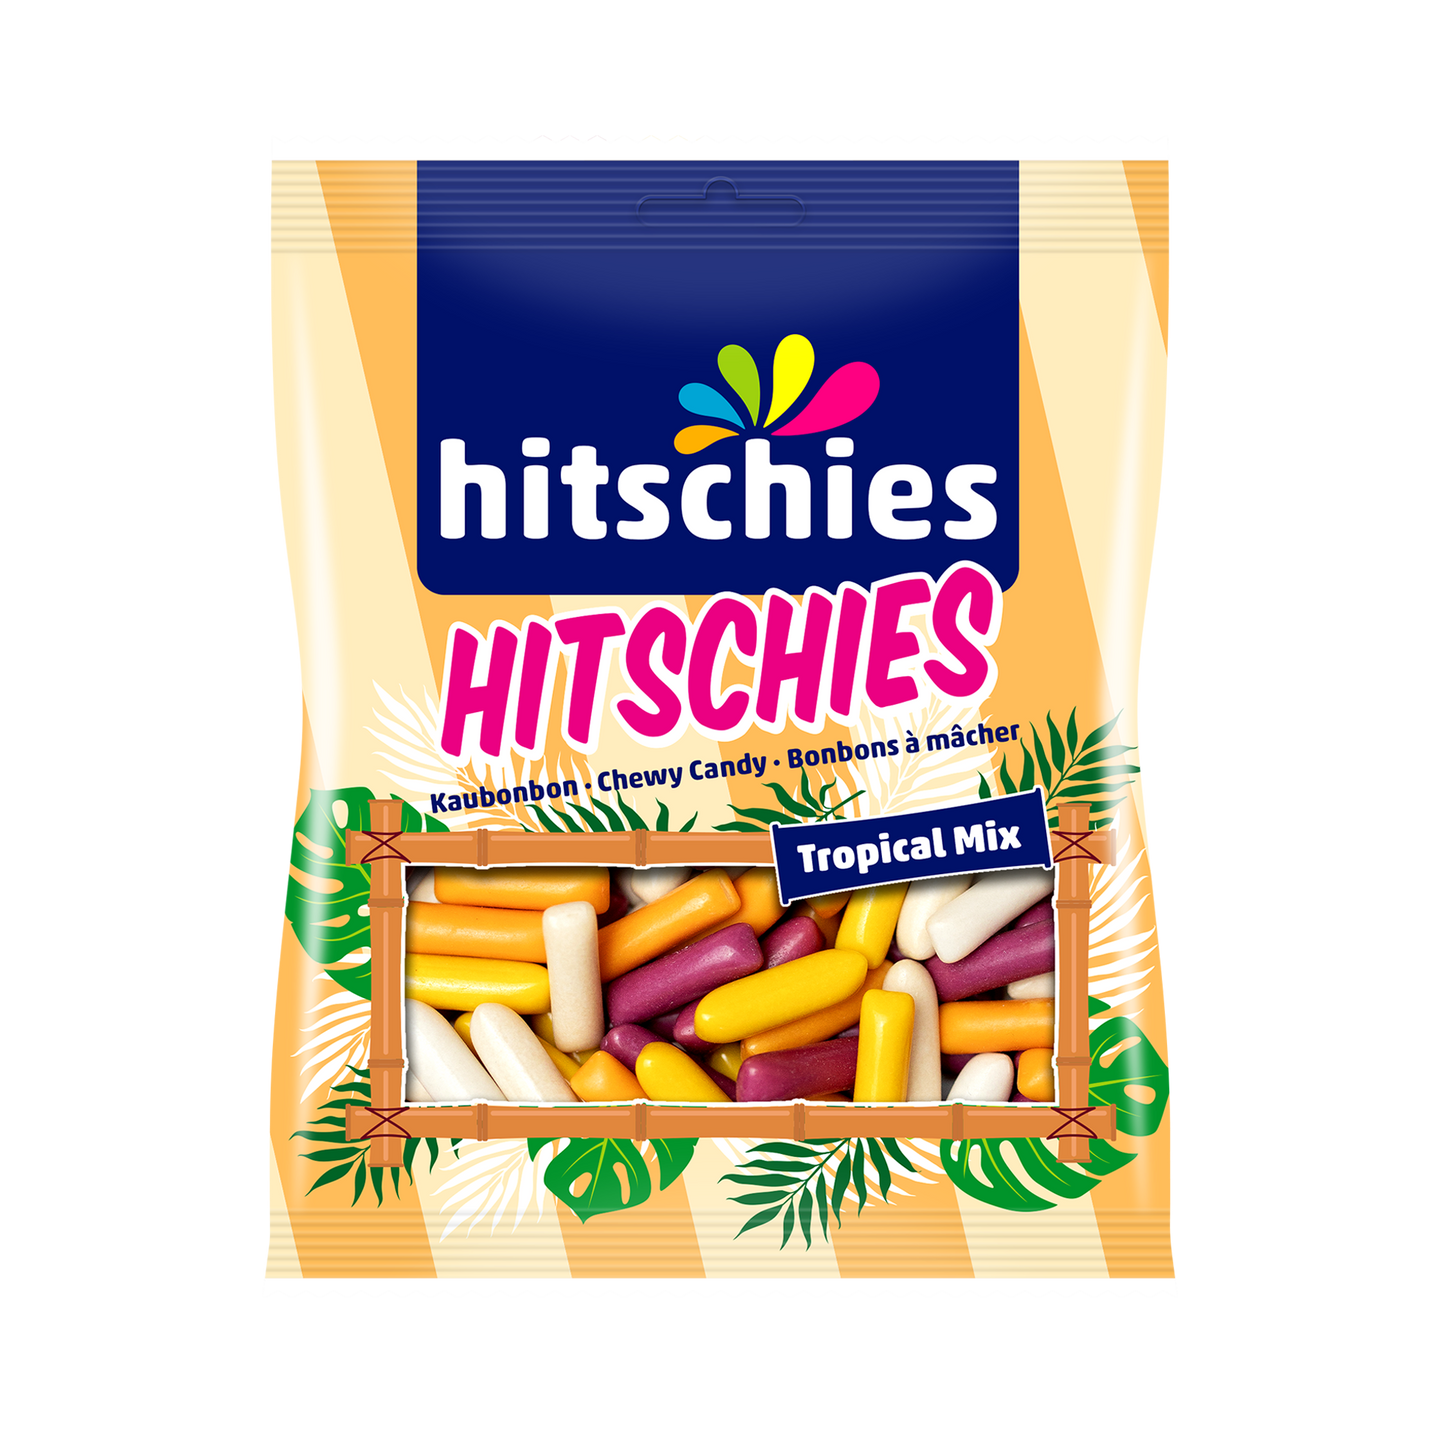 hitschler-hitschies-10658-Hitschies-Tropical-Mix-140g-Sussigkeiten_720x@2x